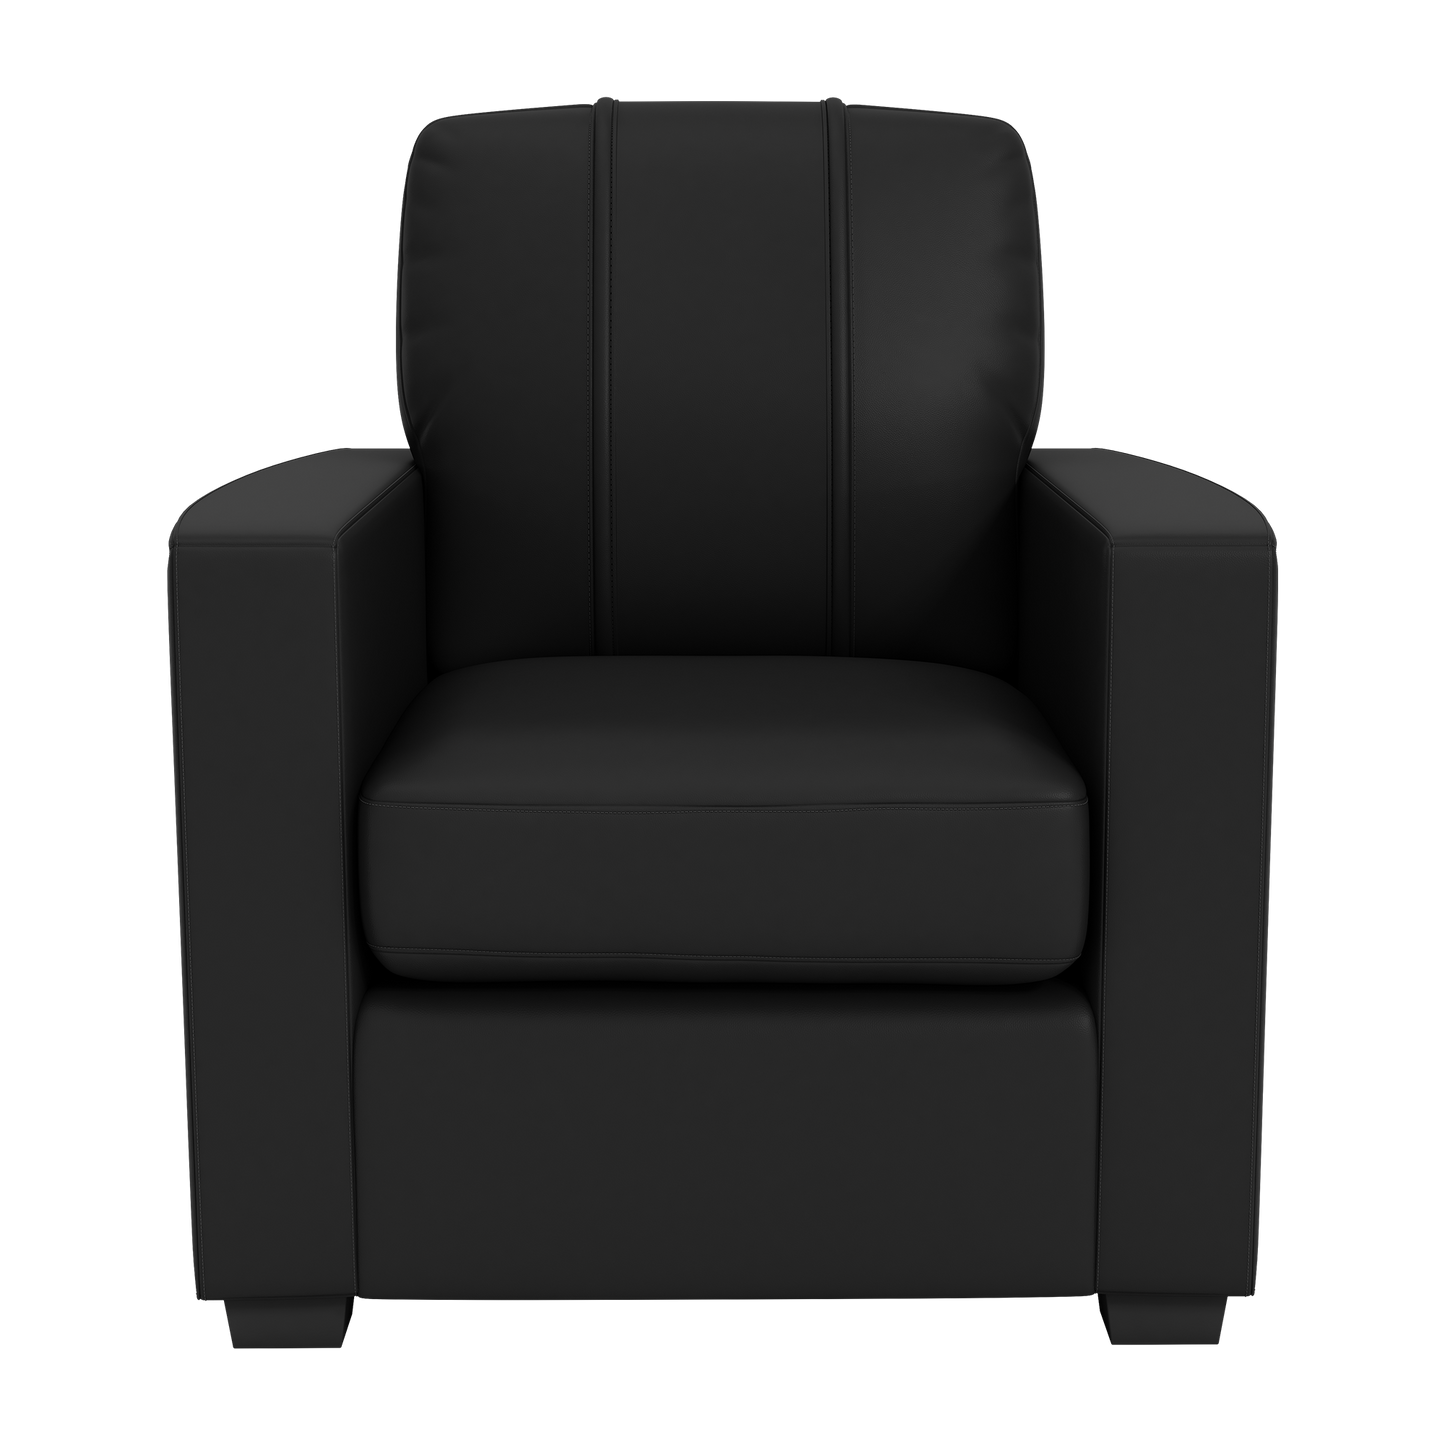 Silver Club Chair with Texas Rangers Logo